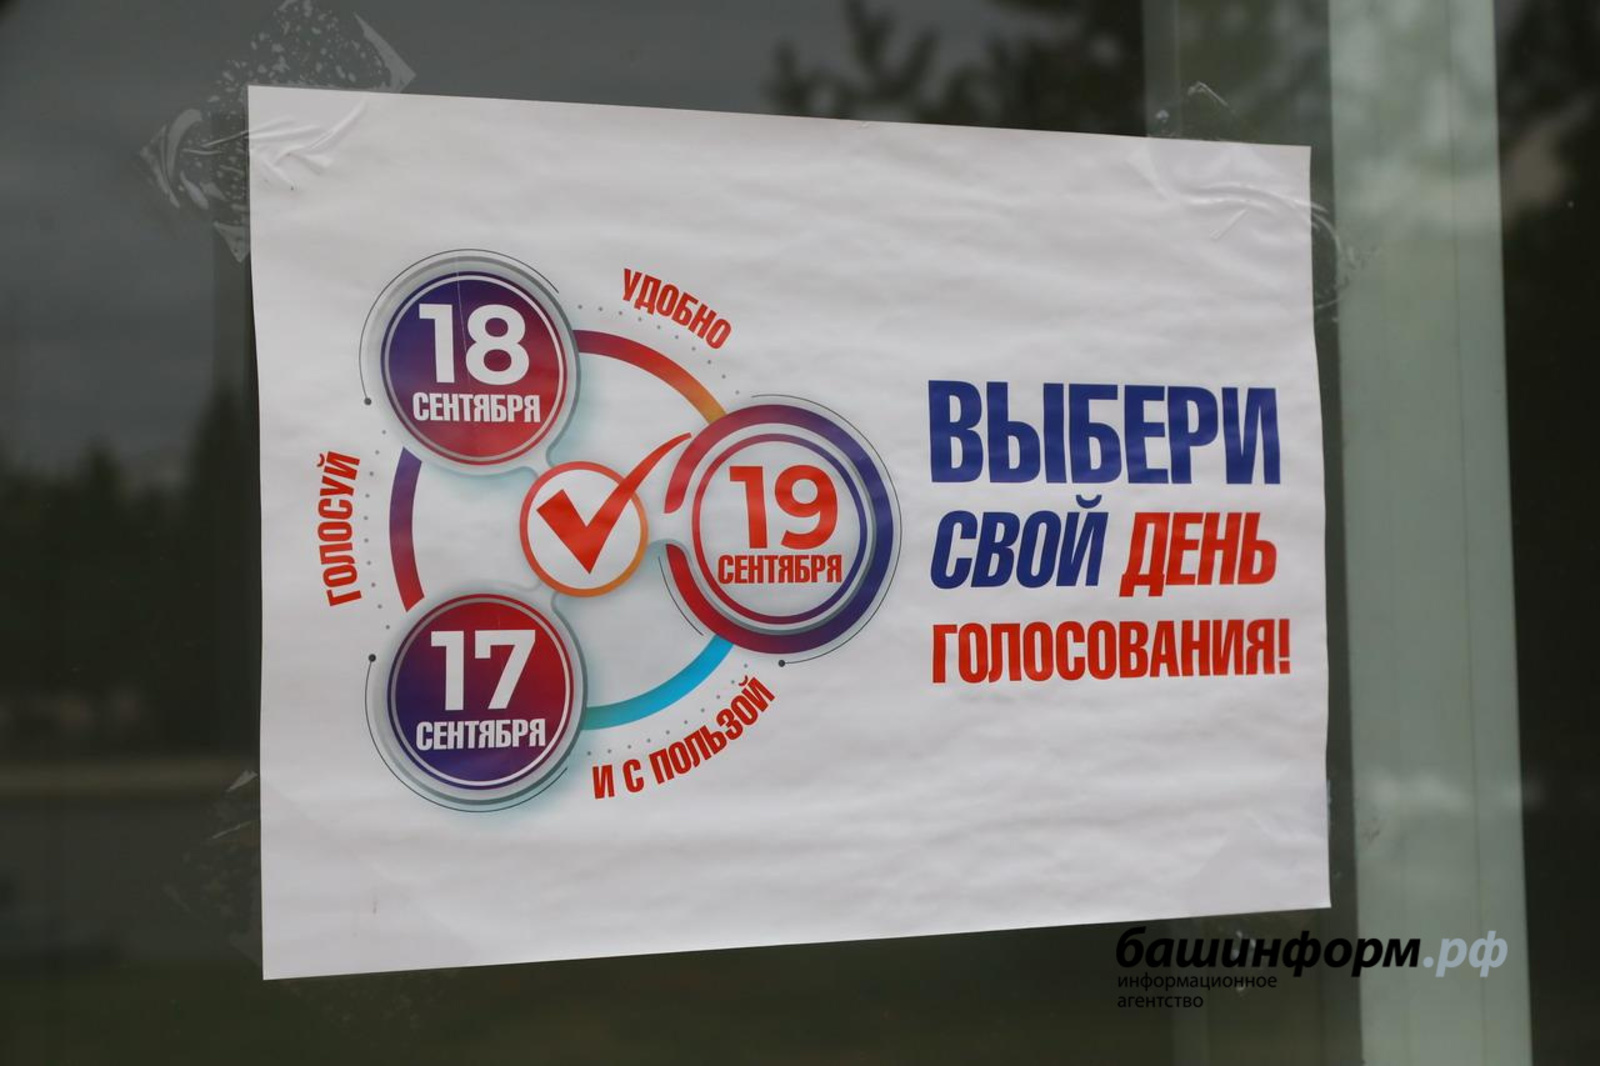 Сегодня второй день голосования на выборах в Государственную Думу